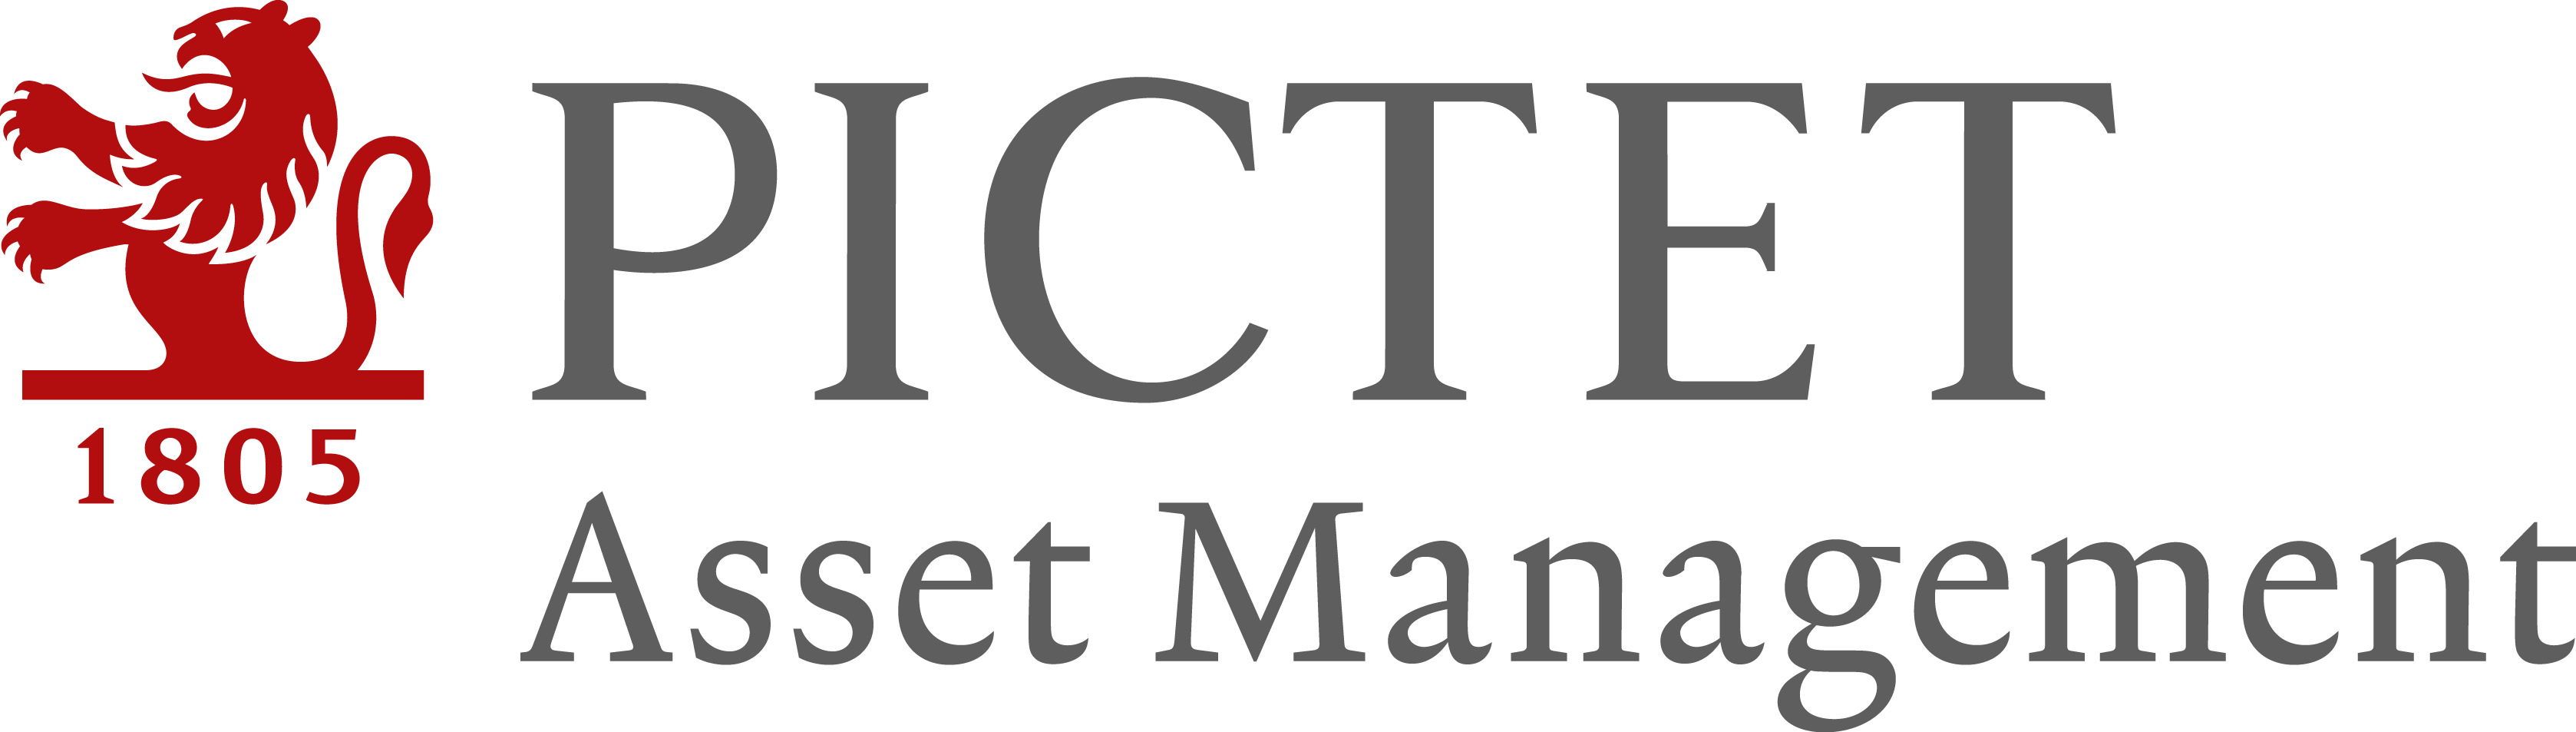 Pictet AM Canada - Pictet Asset Management